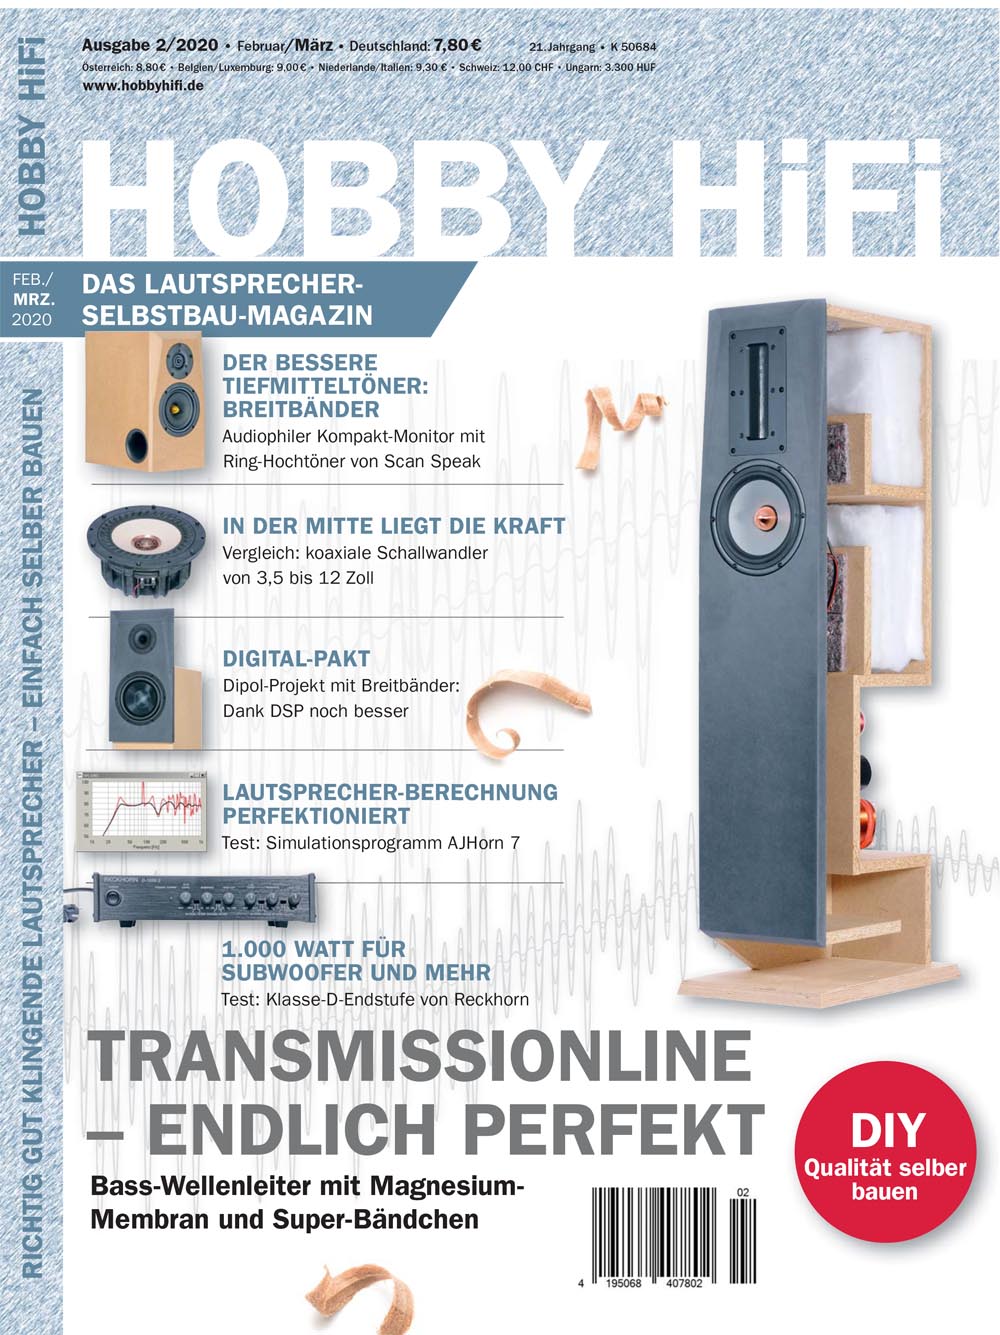 Hobby Hifi 2020 Ausgabe 02-2020